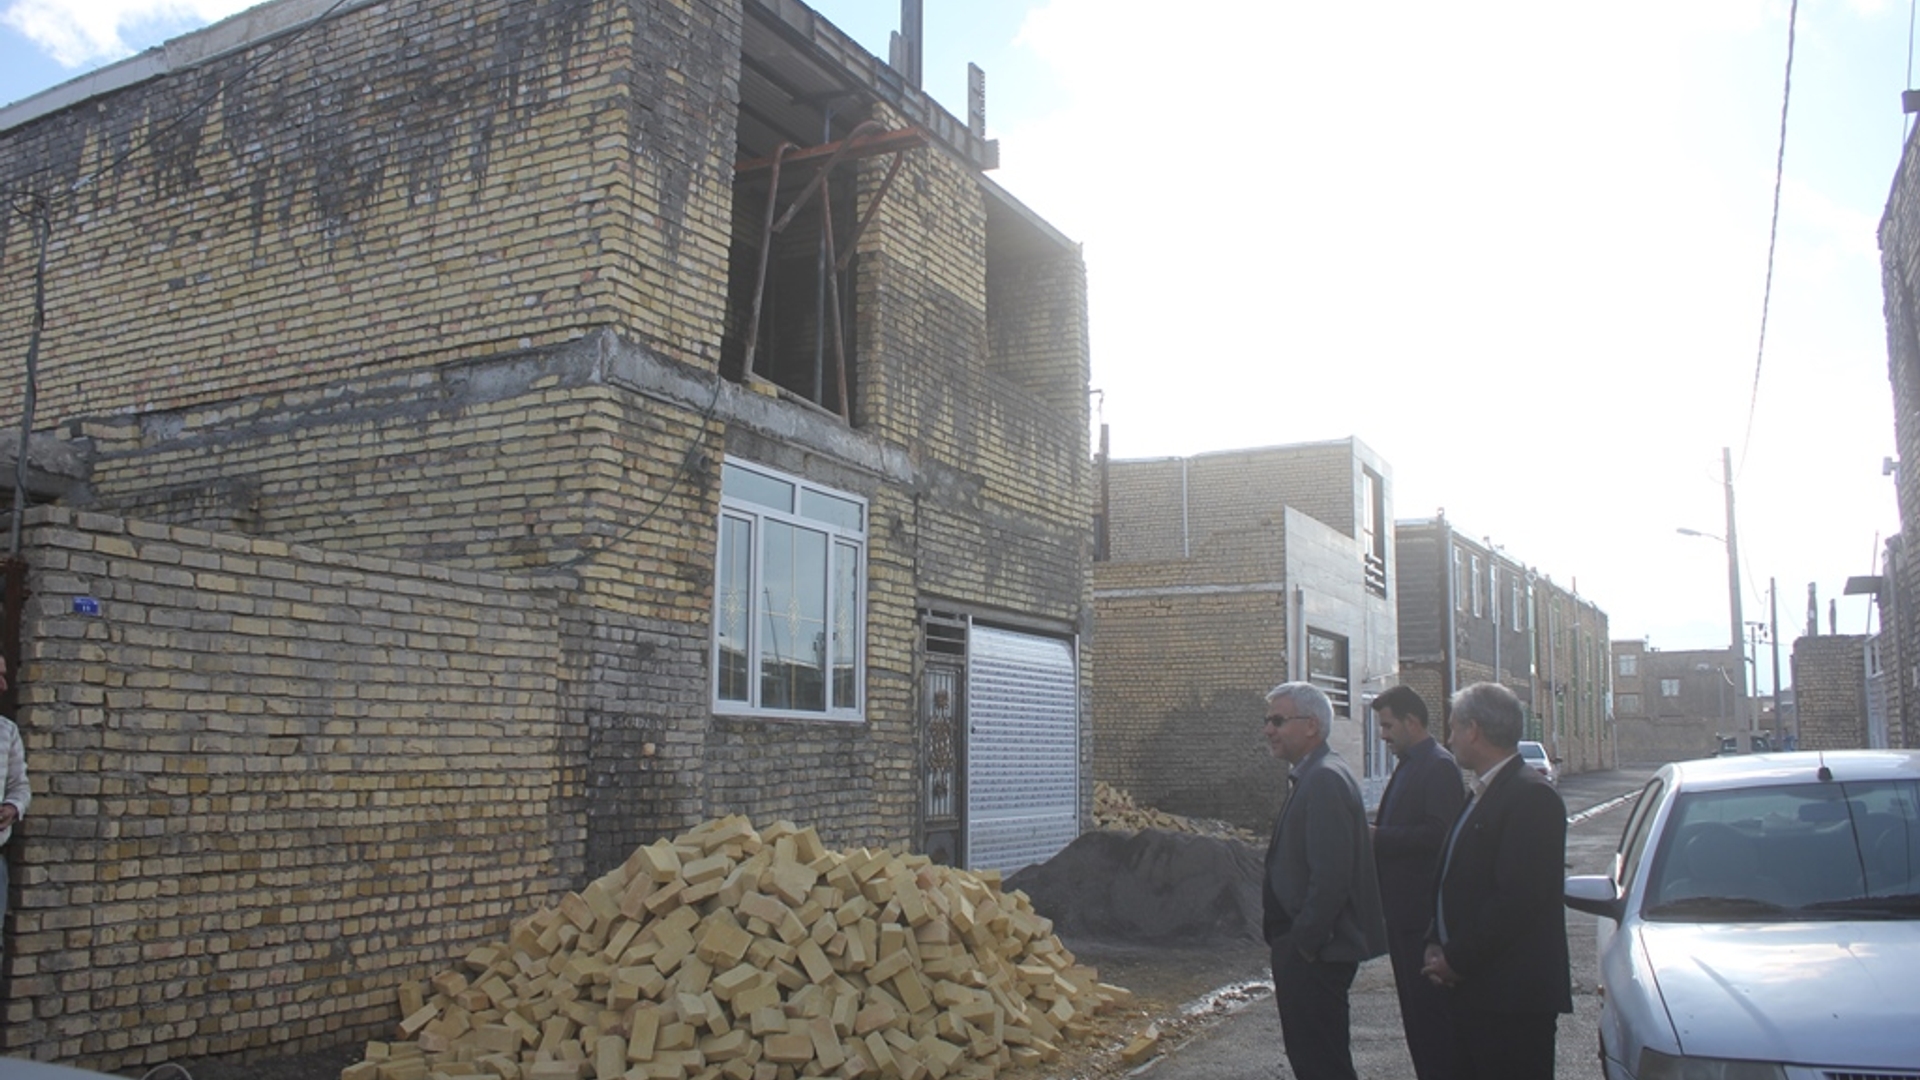 فرماندار از وضعیت ساخت و سازهای غیر مجاز در سطح شهر خمین بازدید کرد